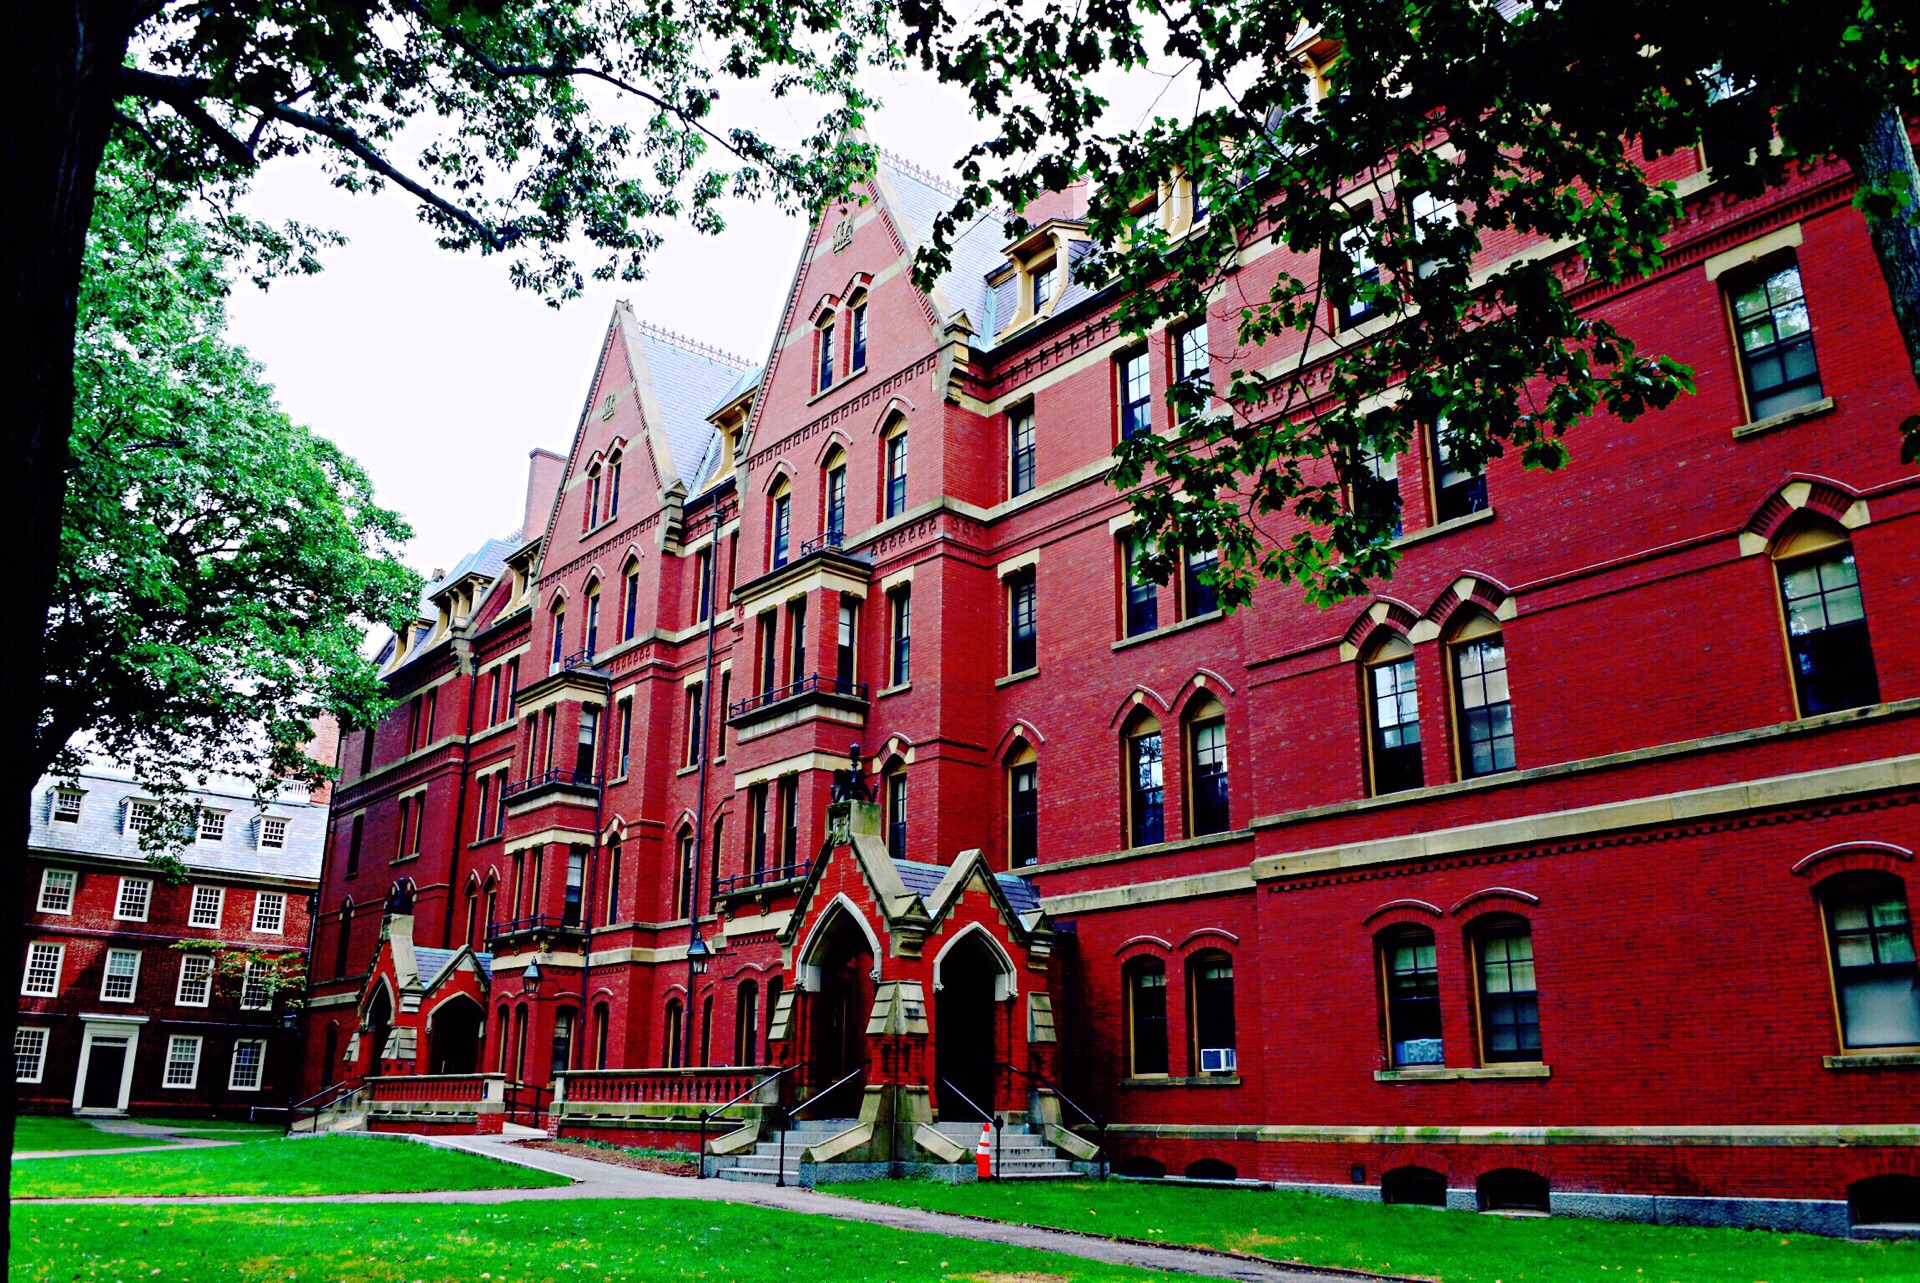 哈佛研究生宿舍(Harvard Graduate Student Housing at 29 Garden -国外景观项目案例-筑龙园林景观论坛